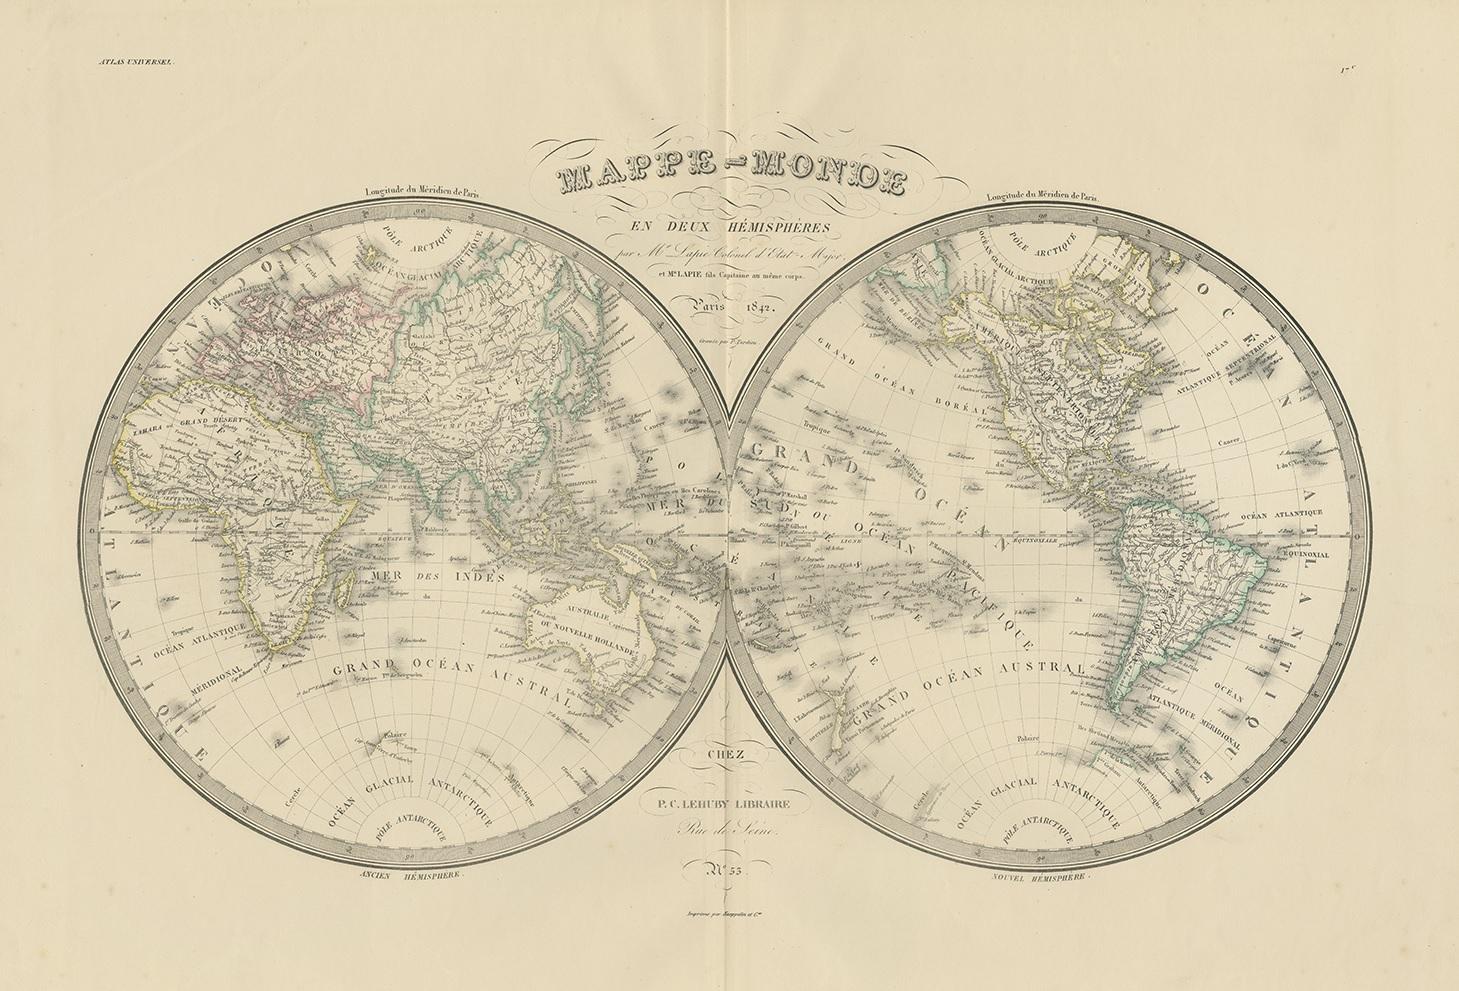 Antique map titled 'Mappe-Monde en deux Hemispheres'. Map of the world. This map originates from 'Atlas universel de géographie ancienne et moderne (..)' by Pierre M. Lapie and Alexandre E. Lapie. Pierre M. Lapie was a French cartographer and